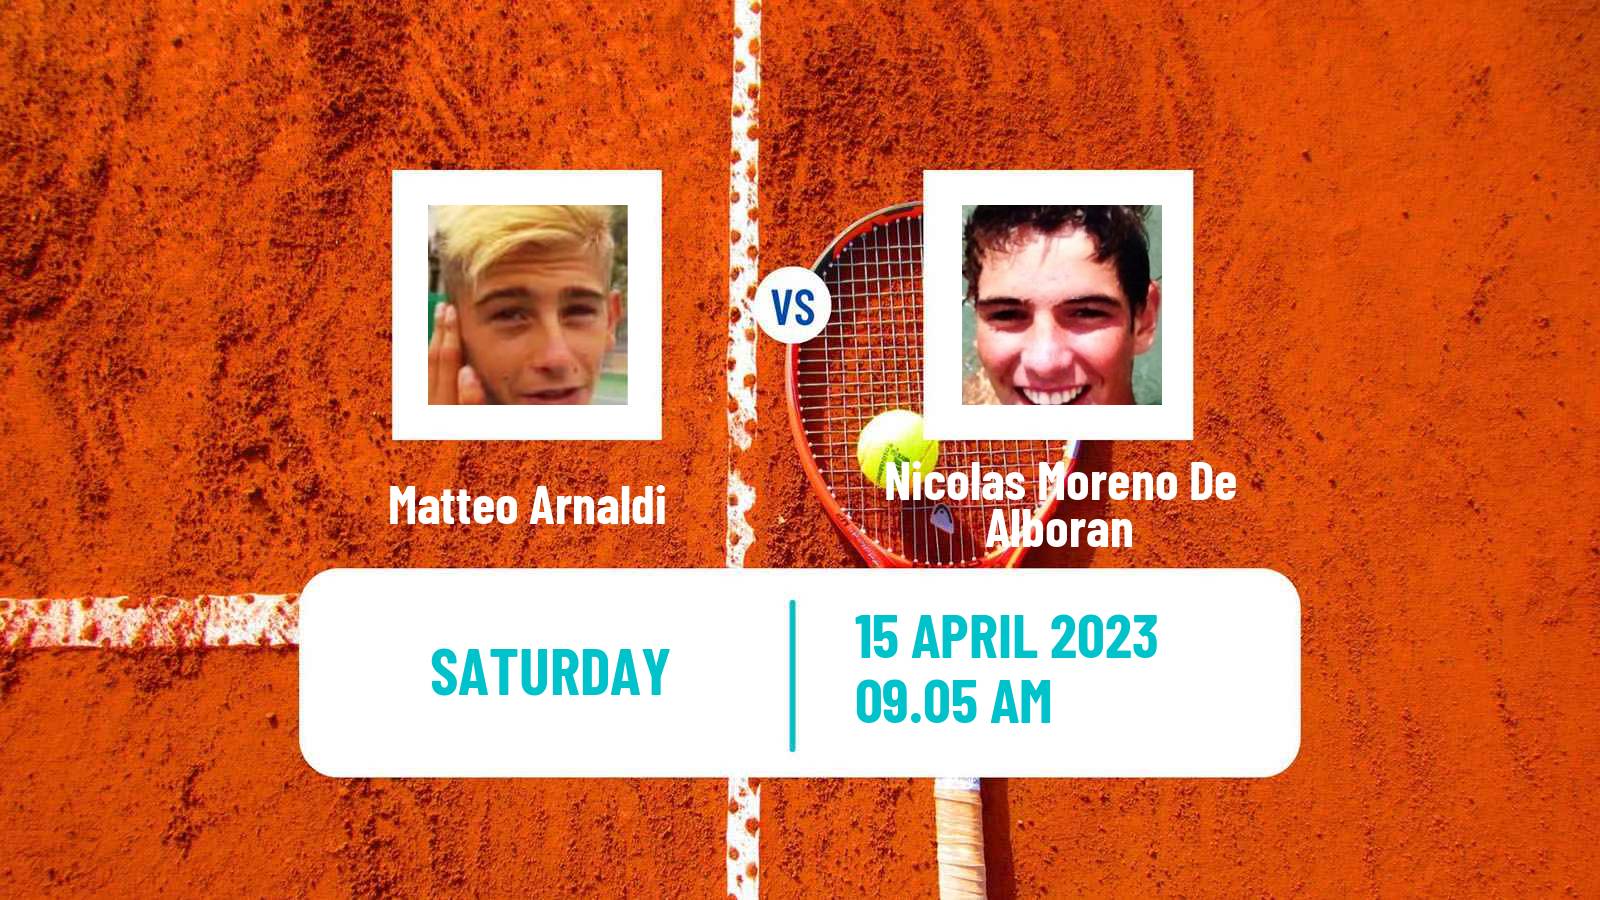 Tennis ATP Barcelona Matteo Arnaldi - Nicolas Moreno De Alboran